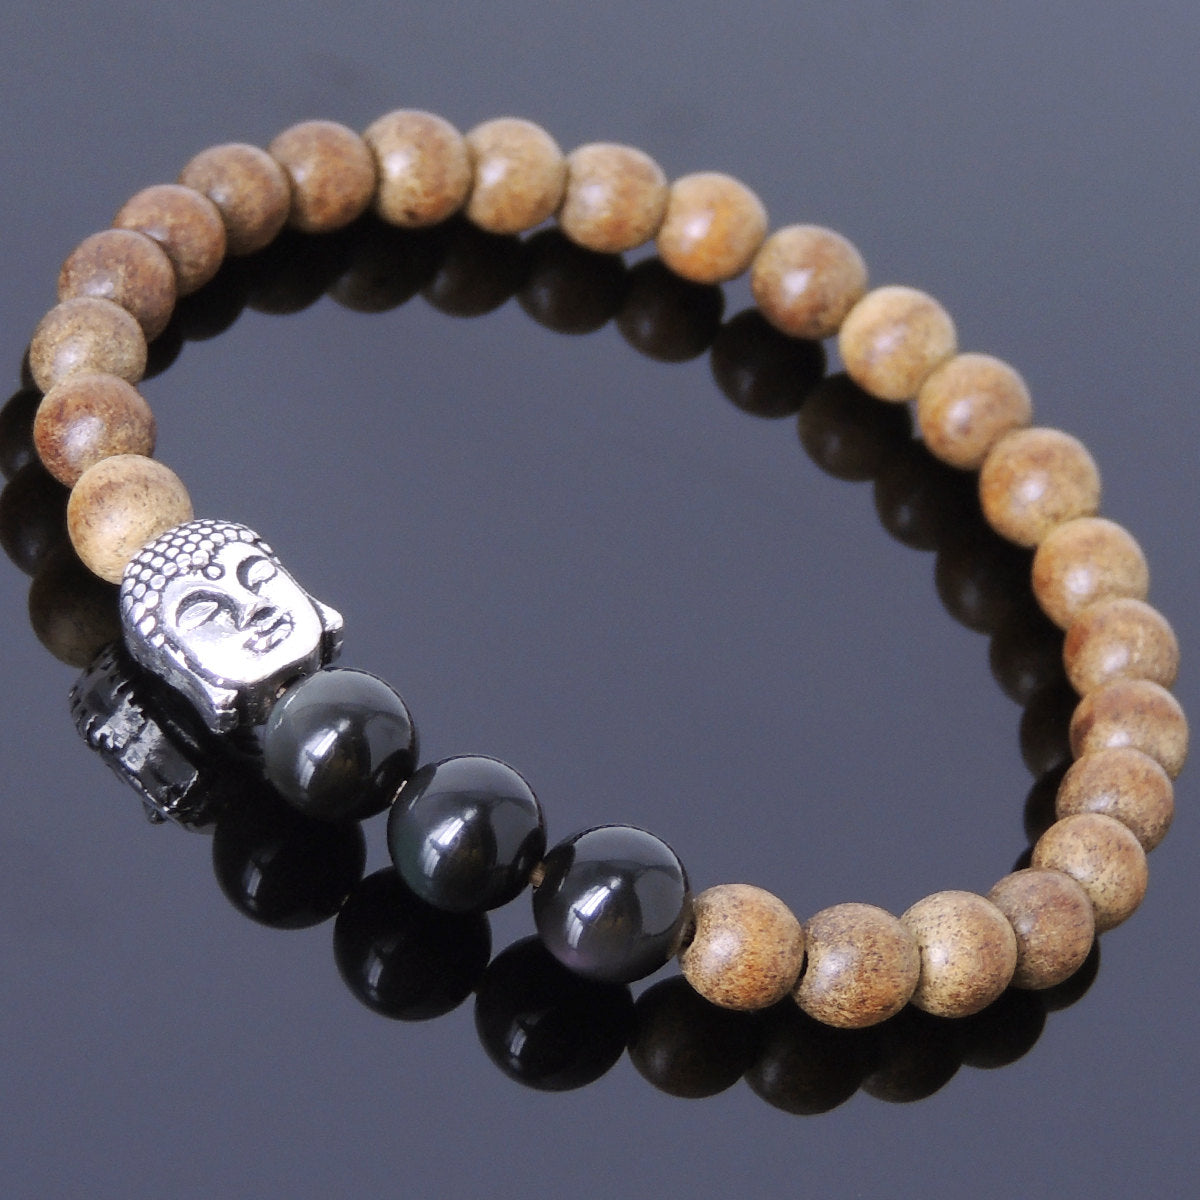 Agarwood & Rainbow Black Obsidian Meditation Bracelet with S925 Sterling Silver Guanyin Buddha Bead - Handmade by Gem & Silver BR439